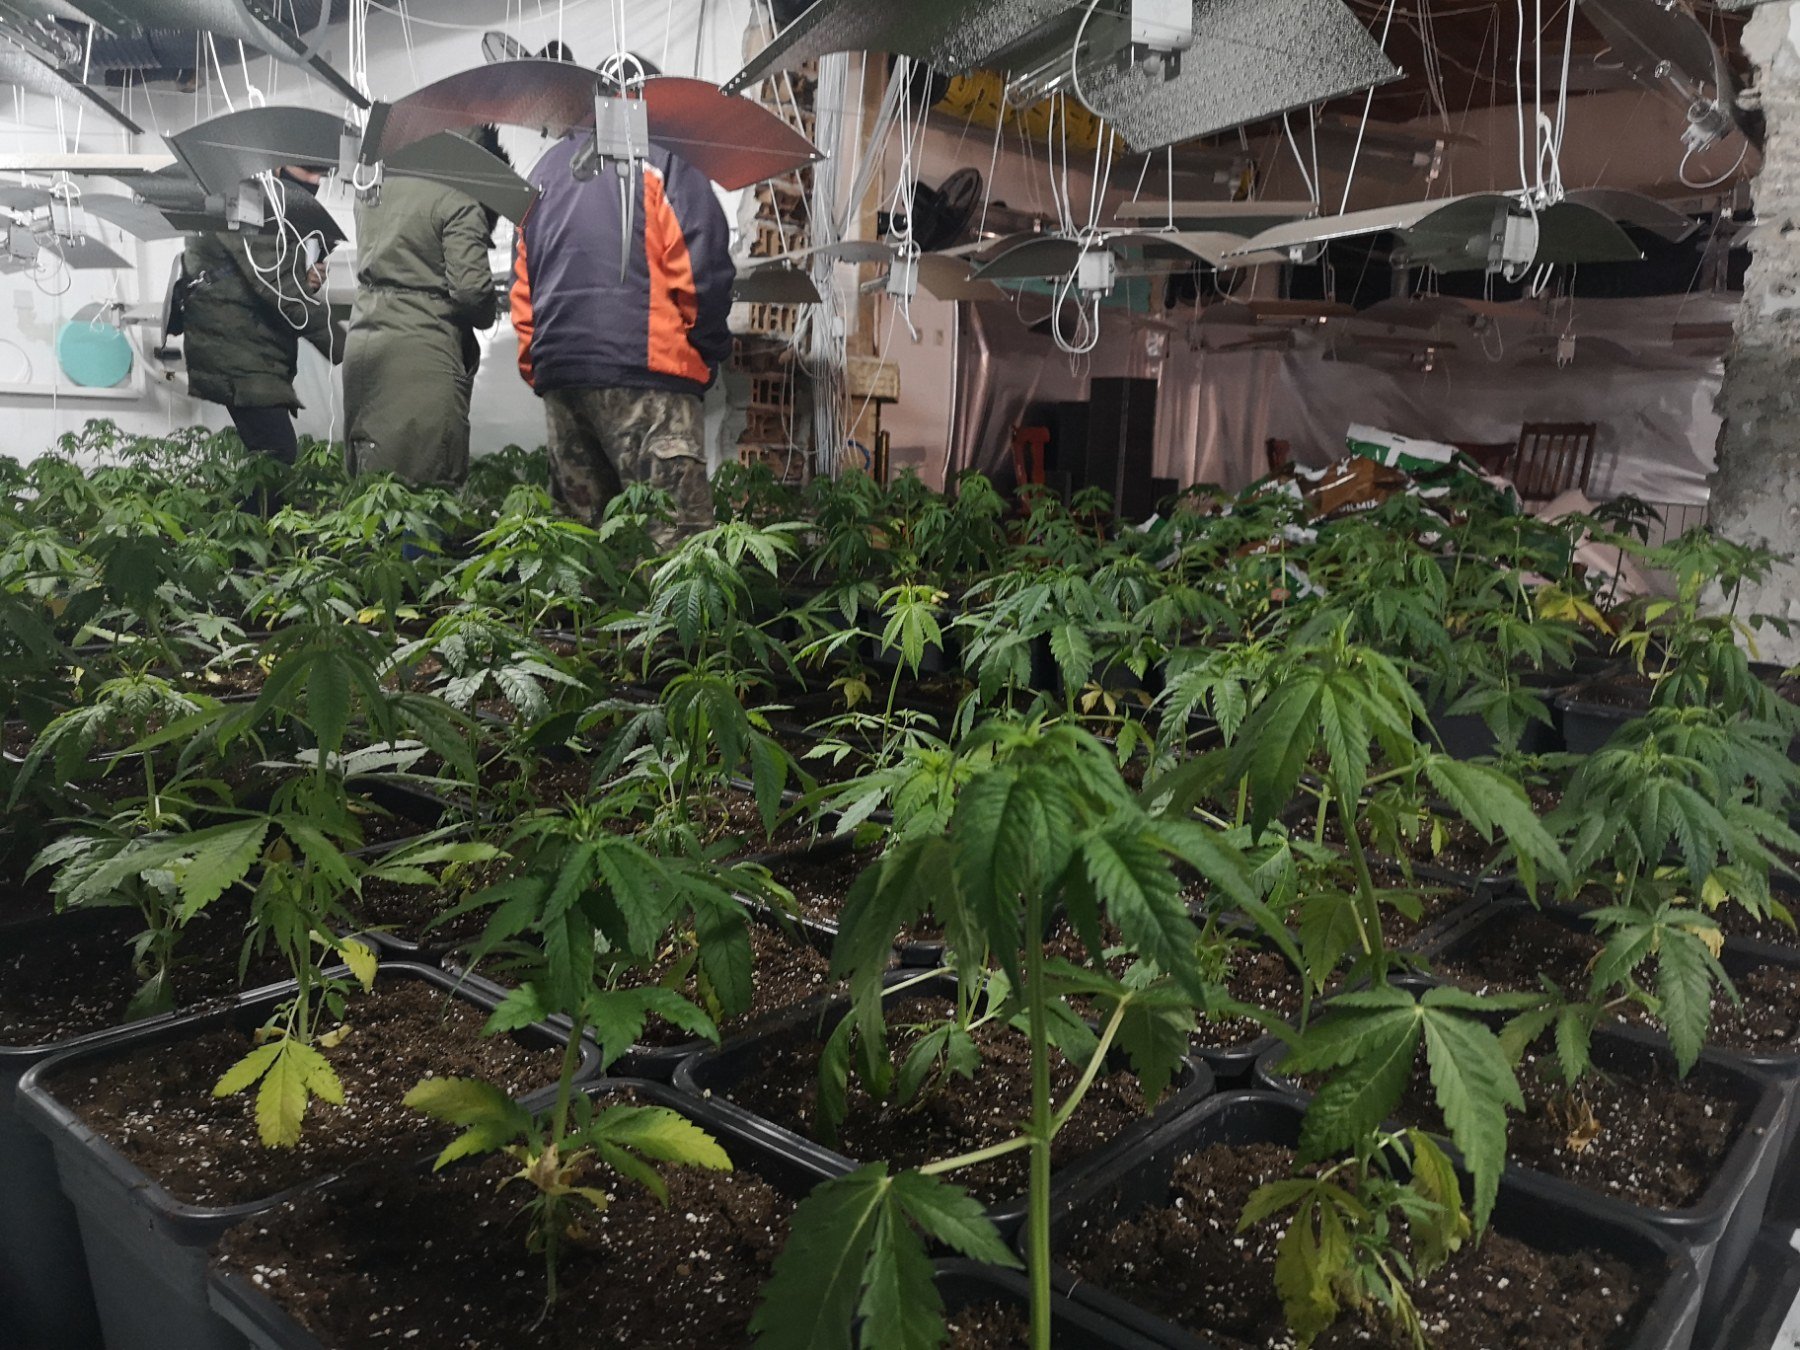 Оранжерия за производство на марихуана е разкрита днес при полицейска